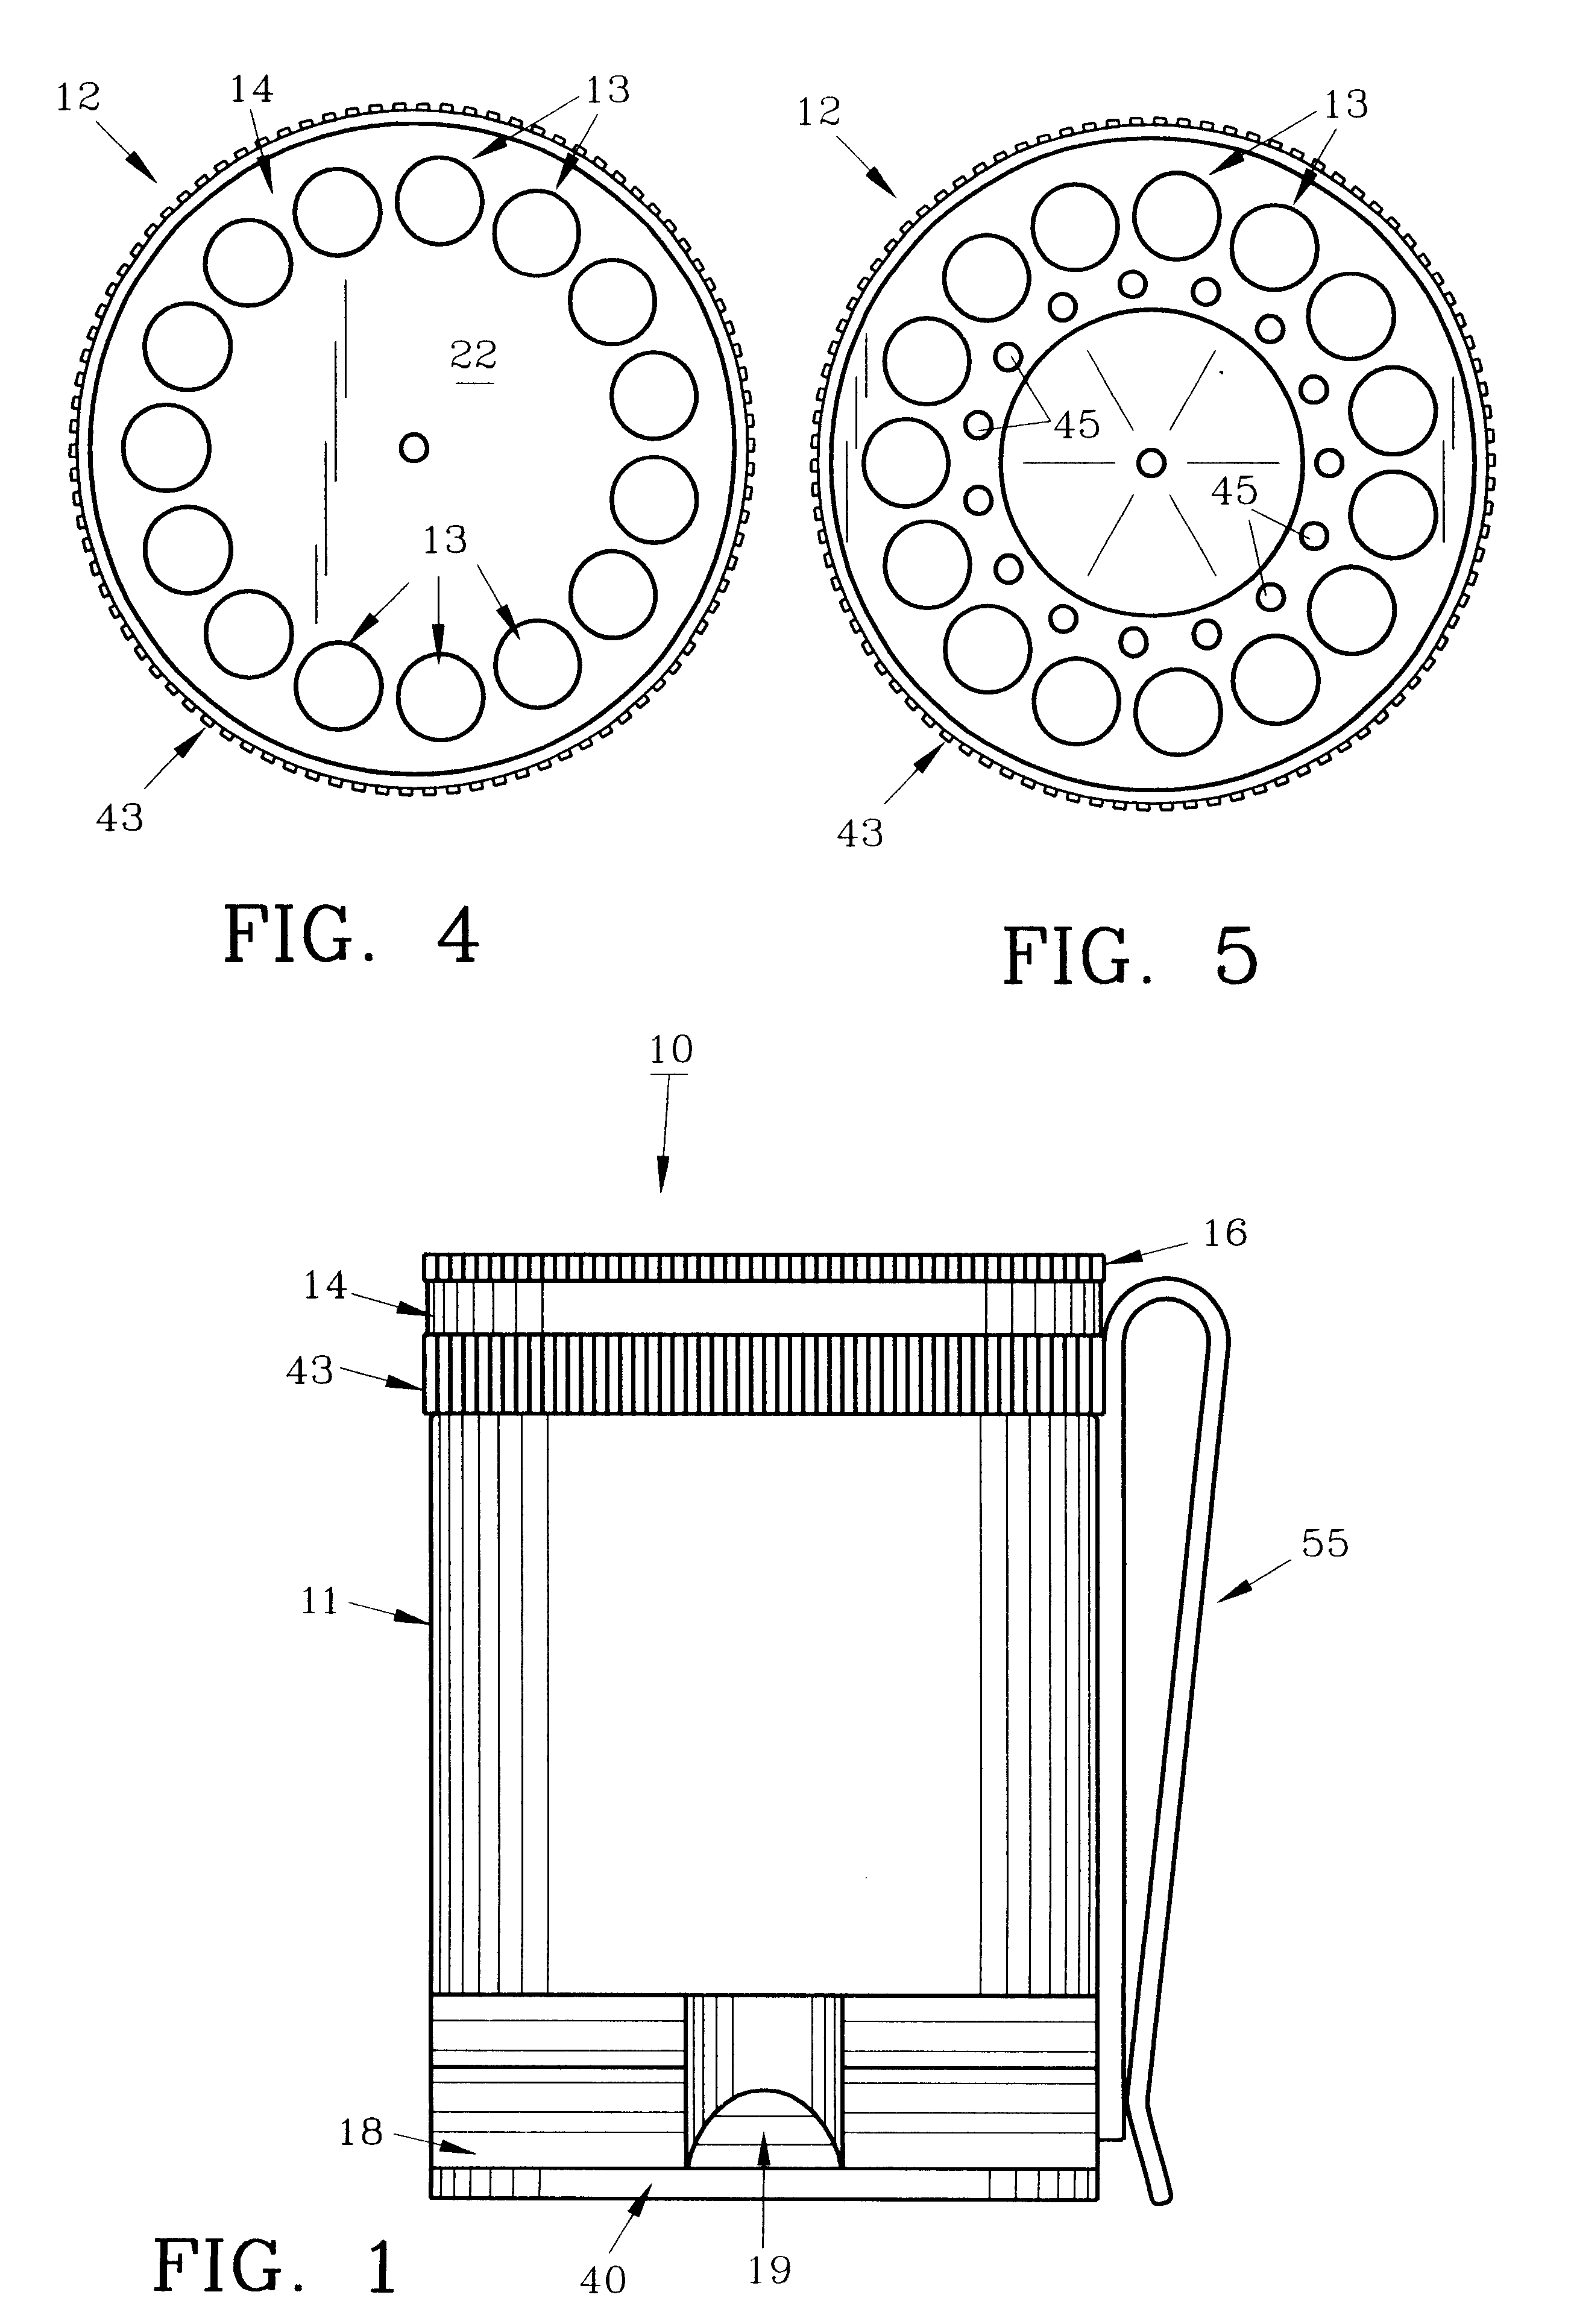 Pellet dispenser and method